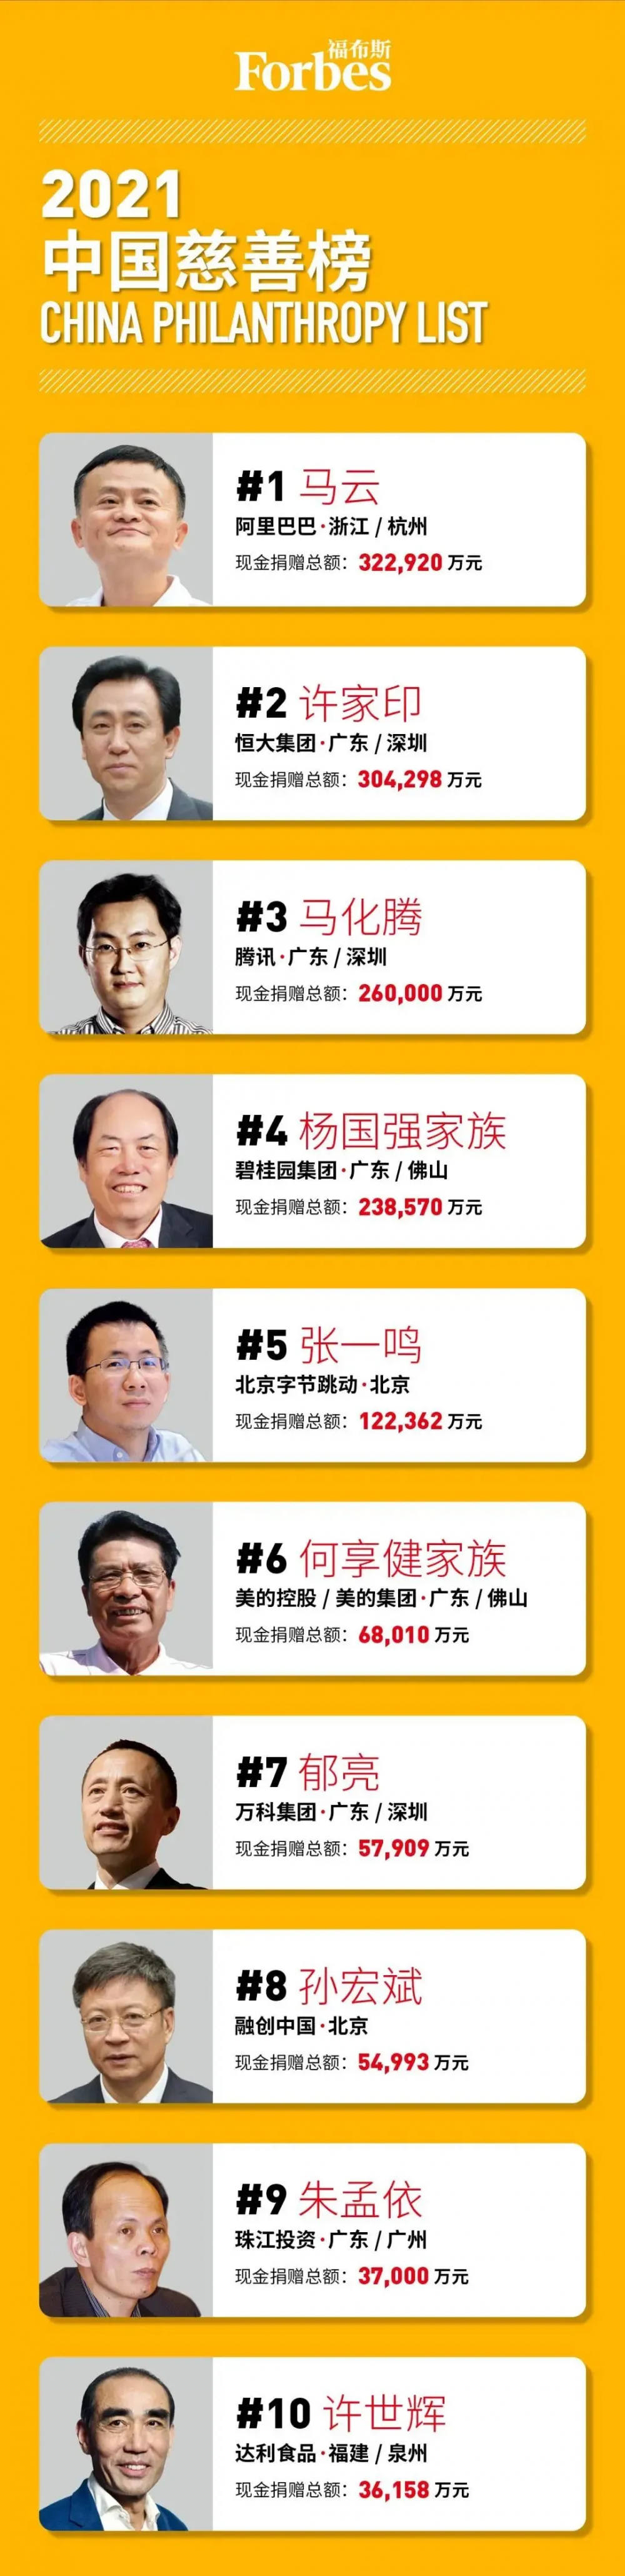 2021福布斯中国慈善榜发布 13位上榜闽籍企业家捐款28亿元